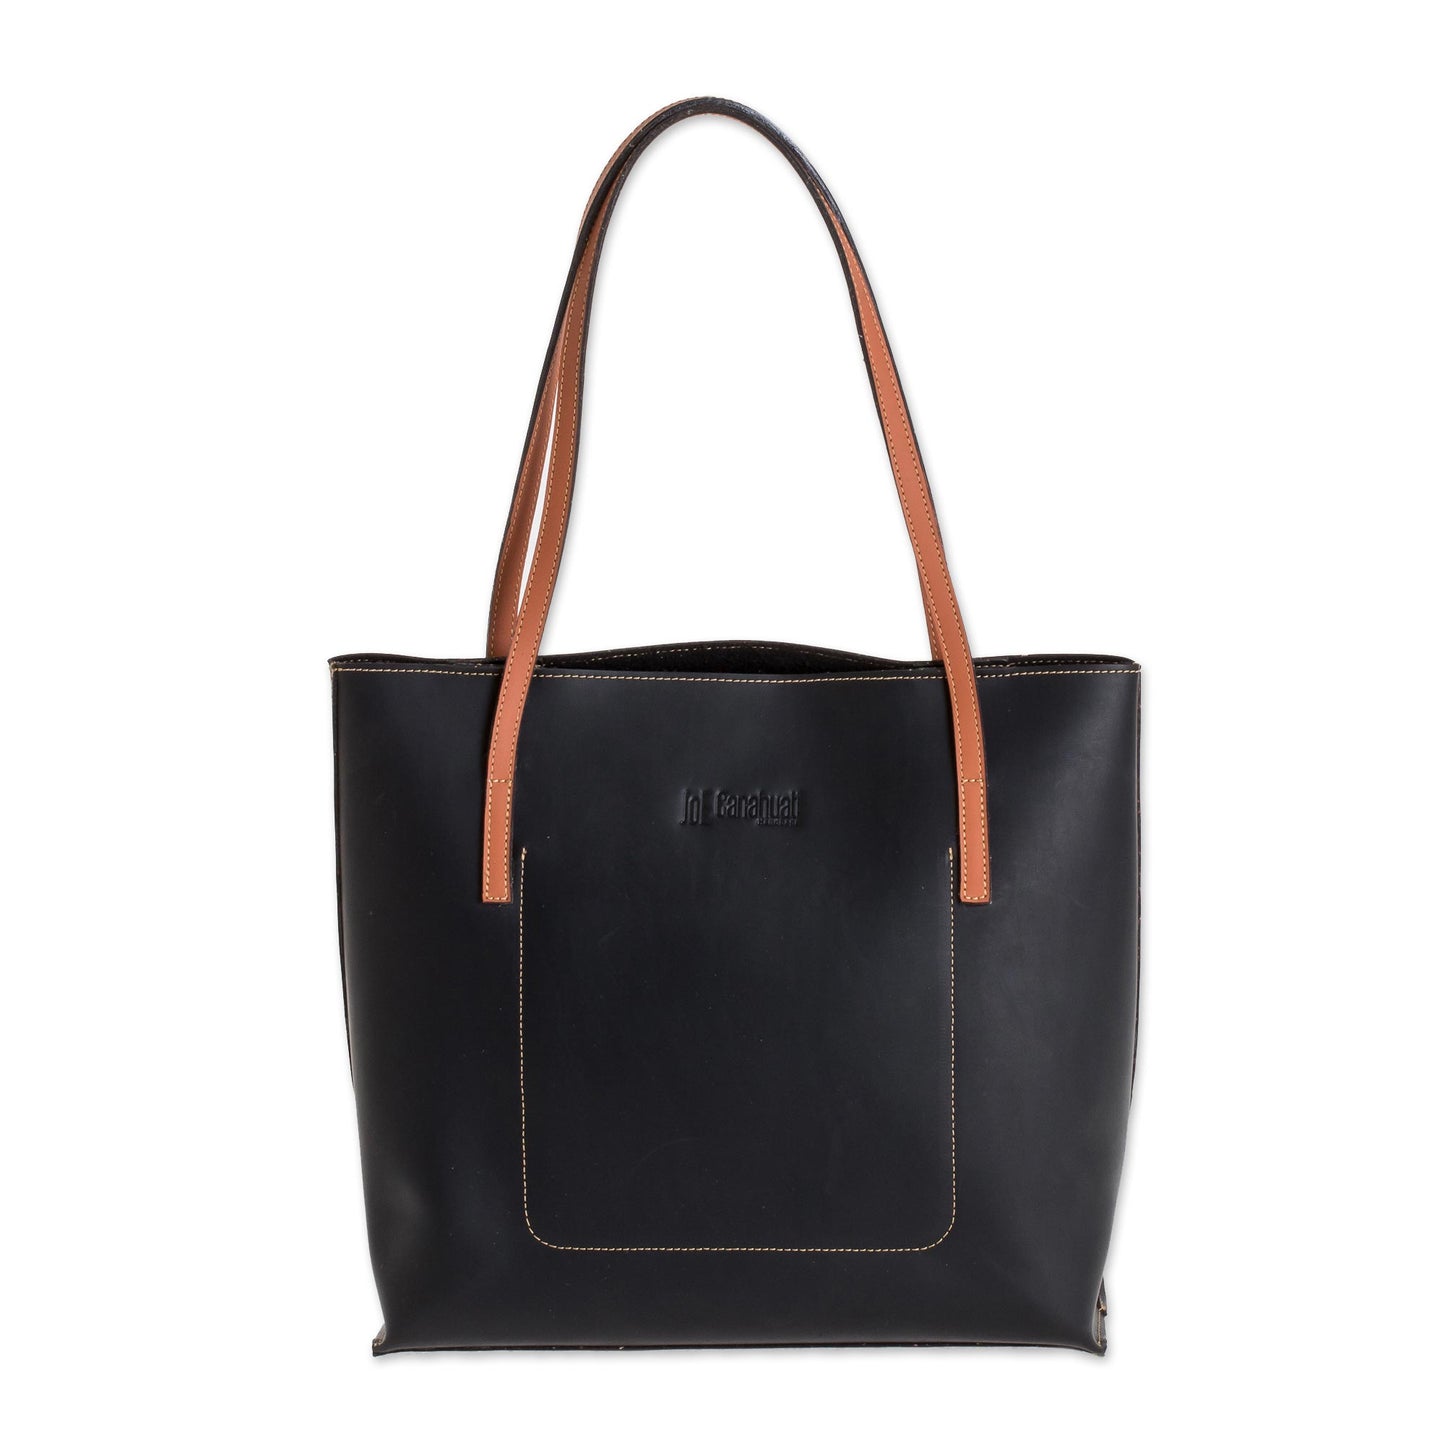 Sublime Style in Black Bonded Leather Shoulder Bag in Black from El Salvador